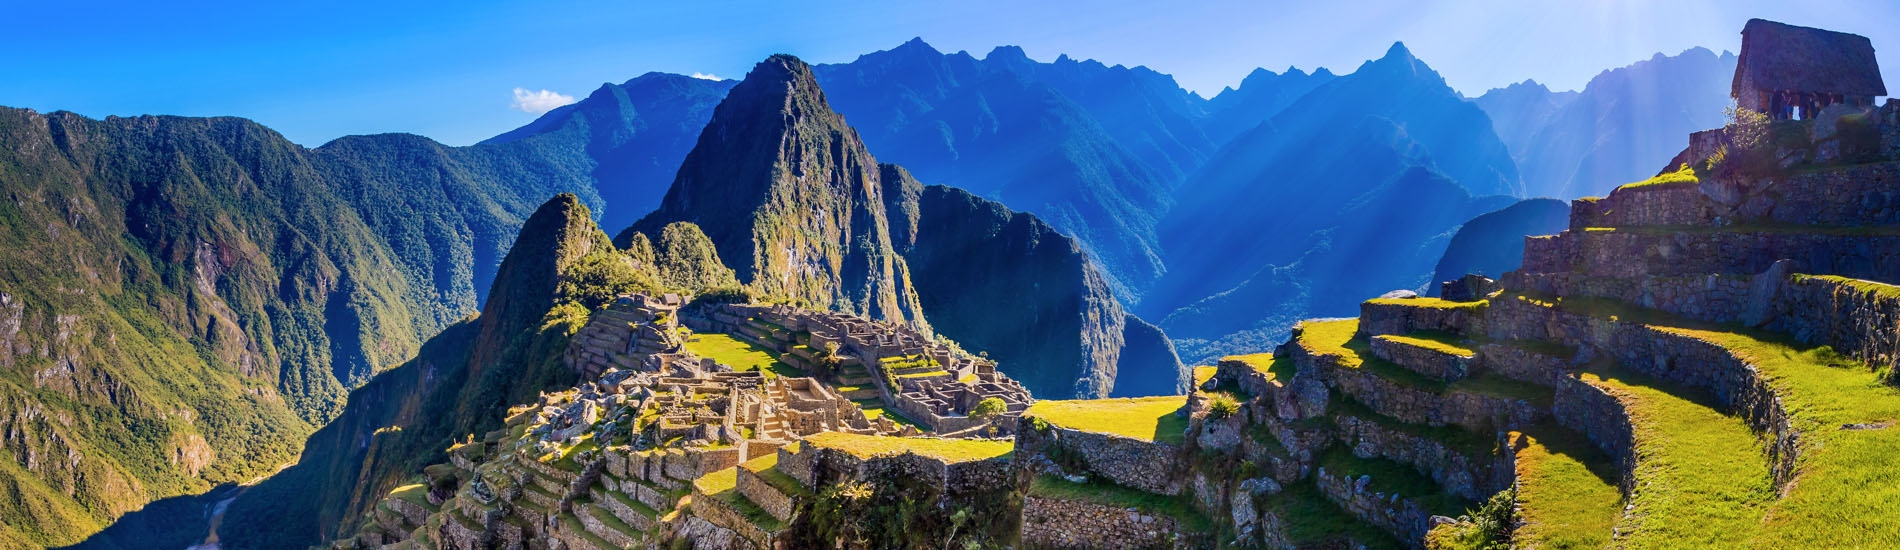 Cusco - Machu Picchu citadel